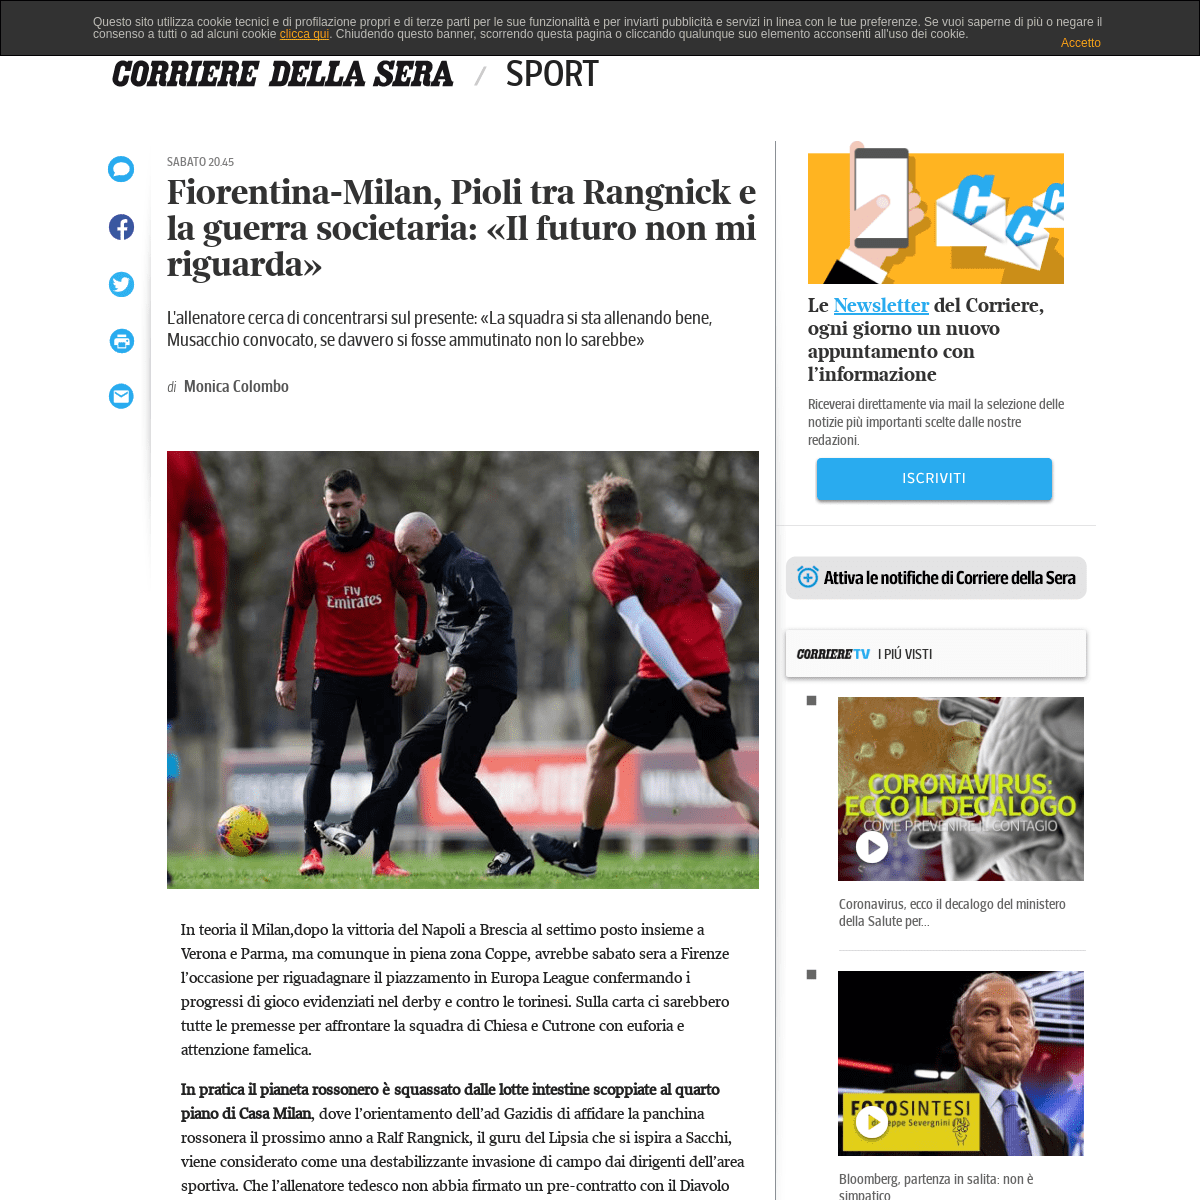 Fiorentina-Milan, Pioli tra Rangnick e la guerra societaria- Â«Il futuro non mi riguardaÂ» - Corriere.it